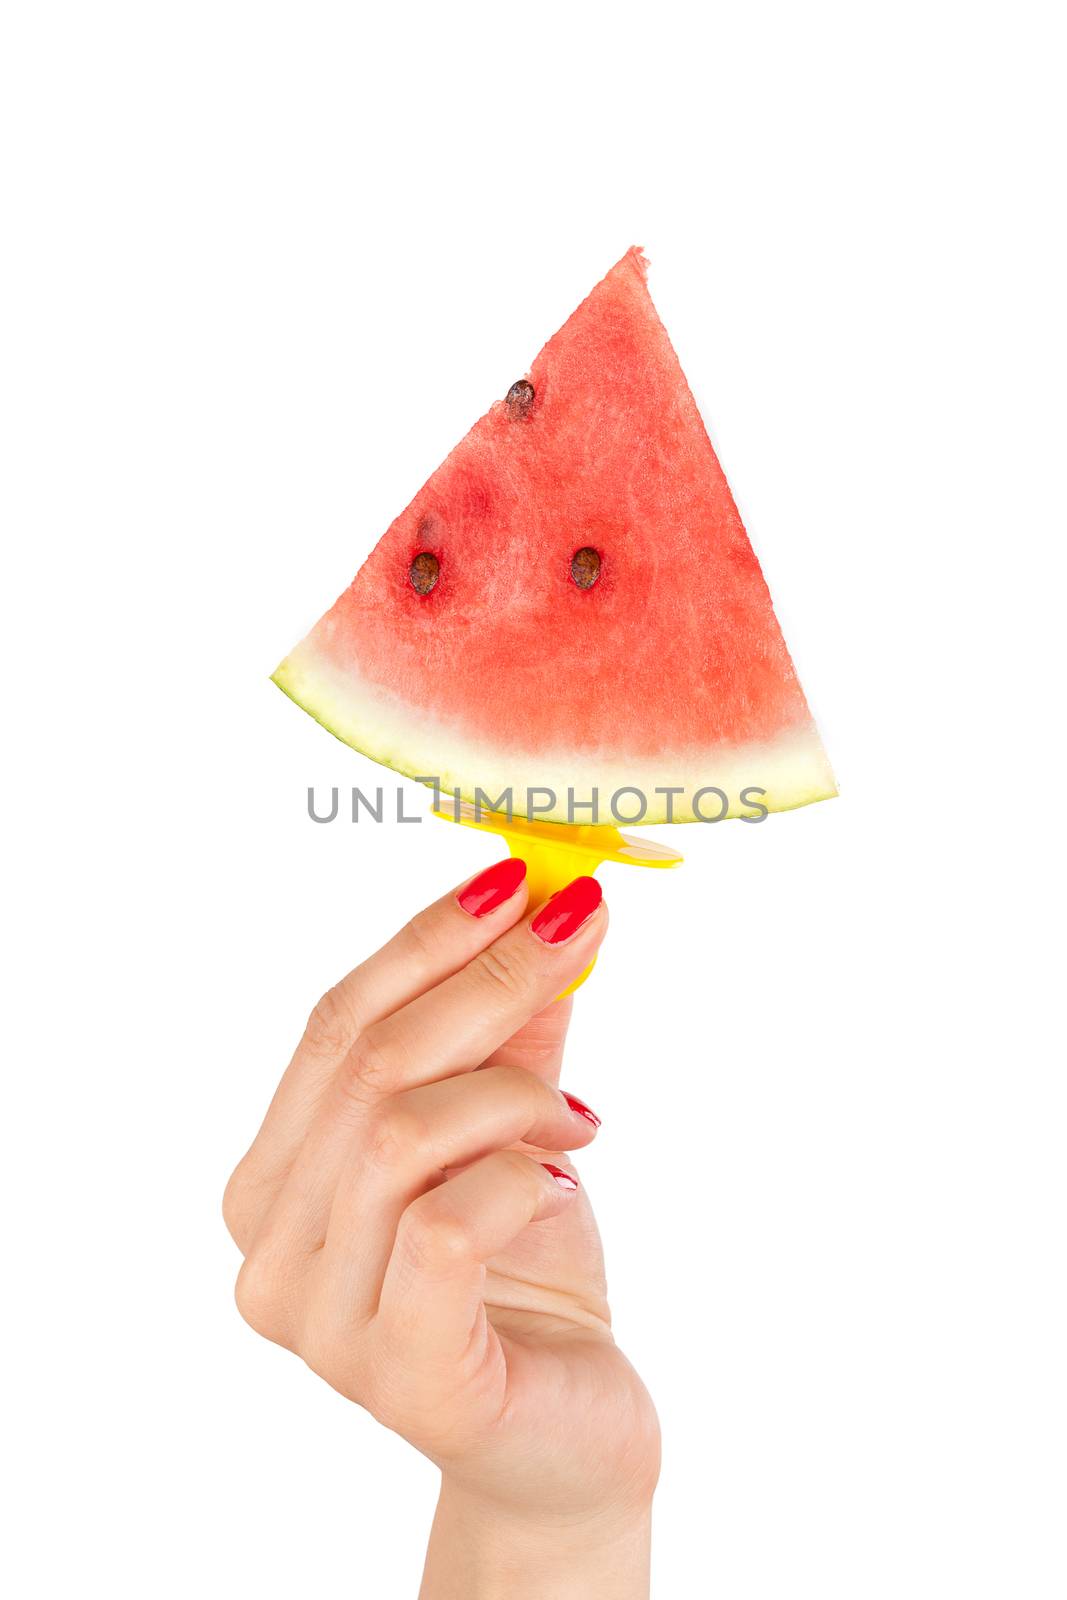 Watermelon popsicle. by eskymaks